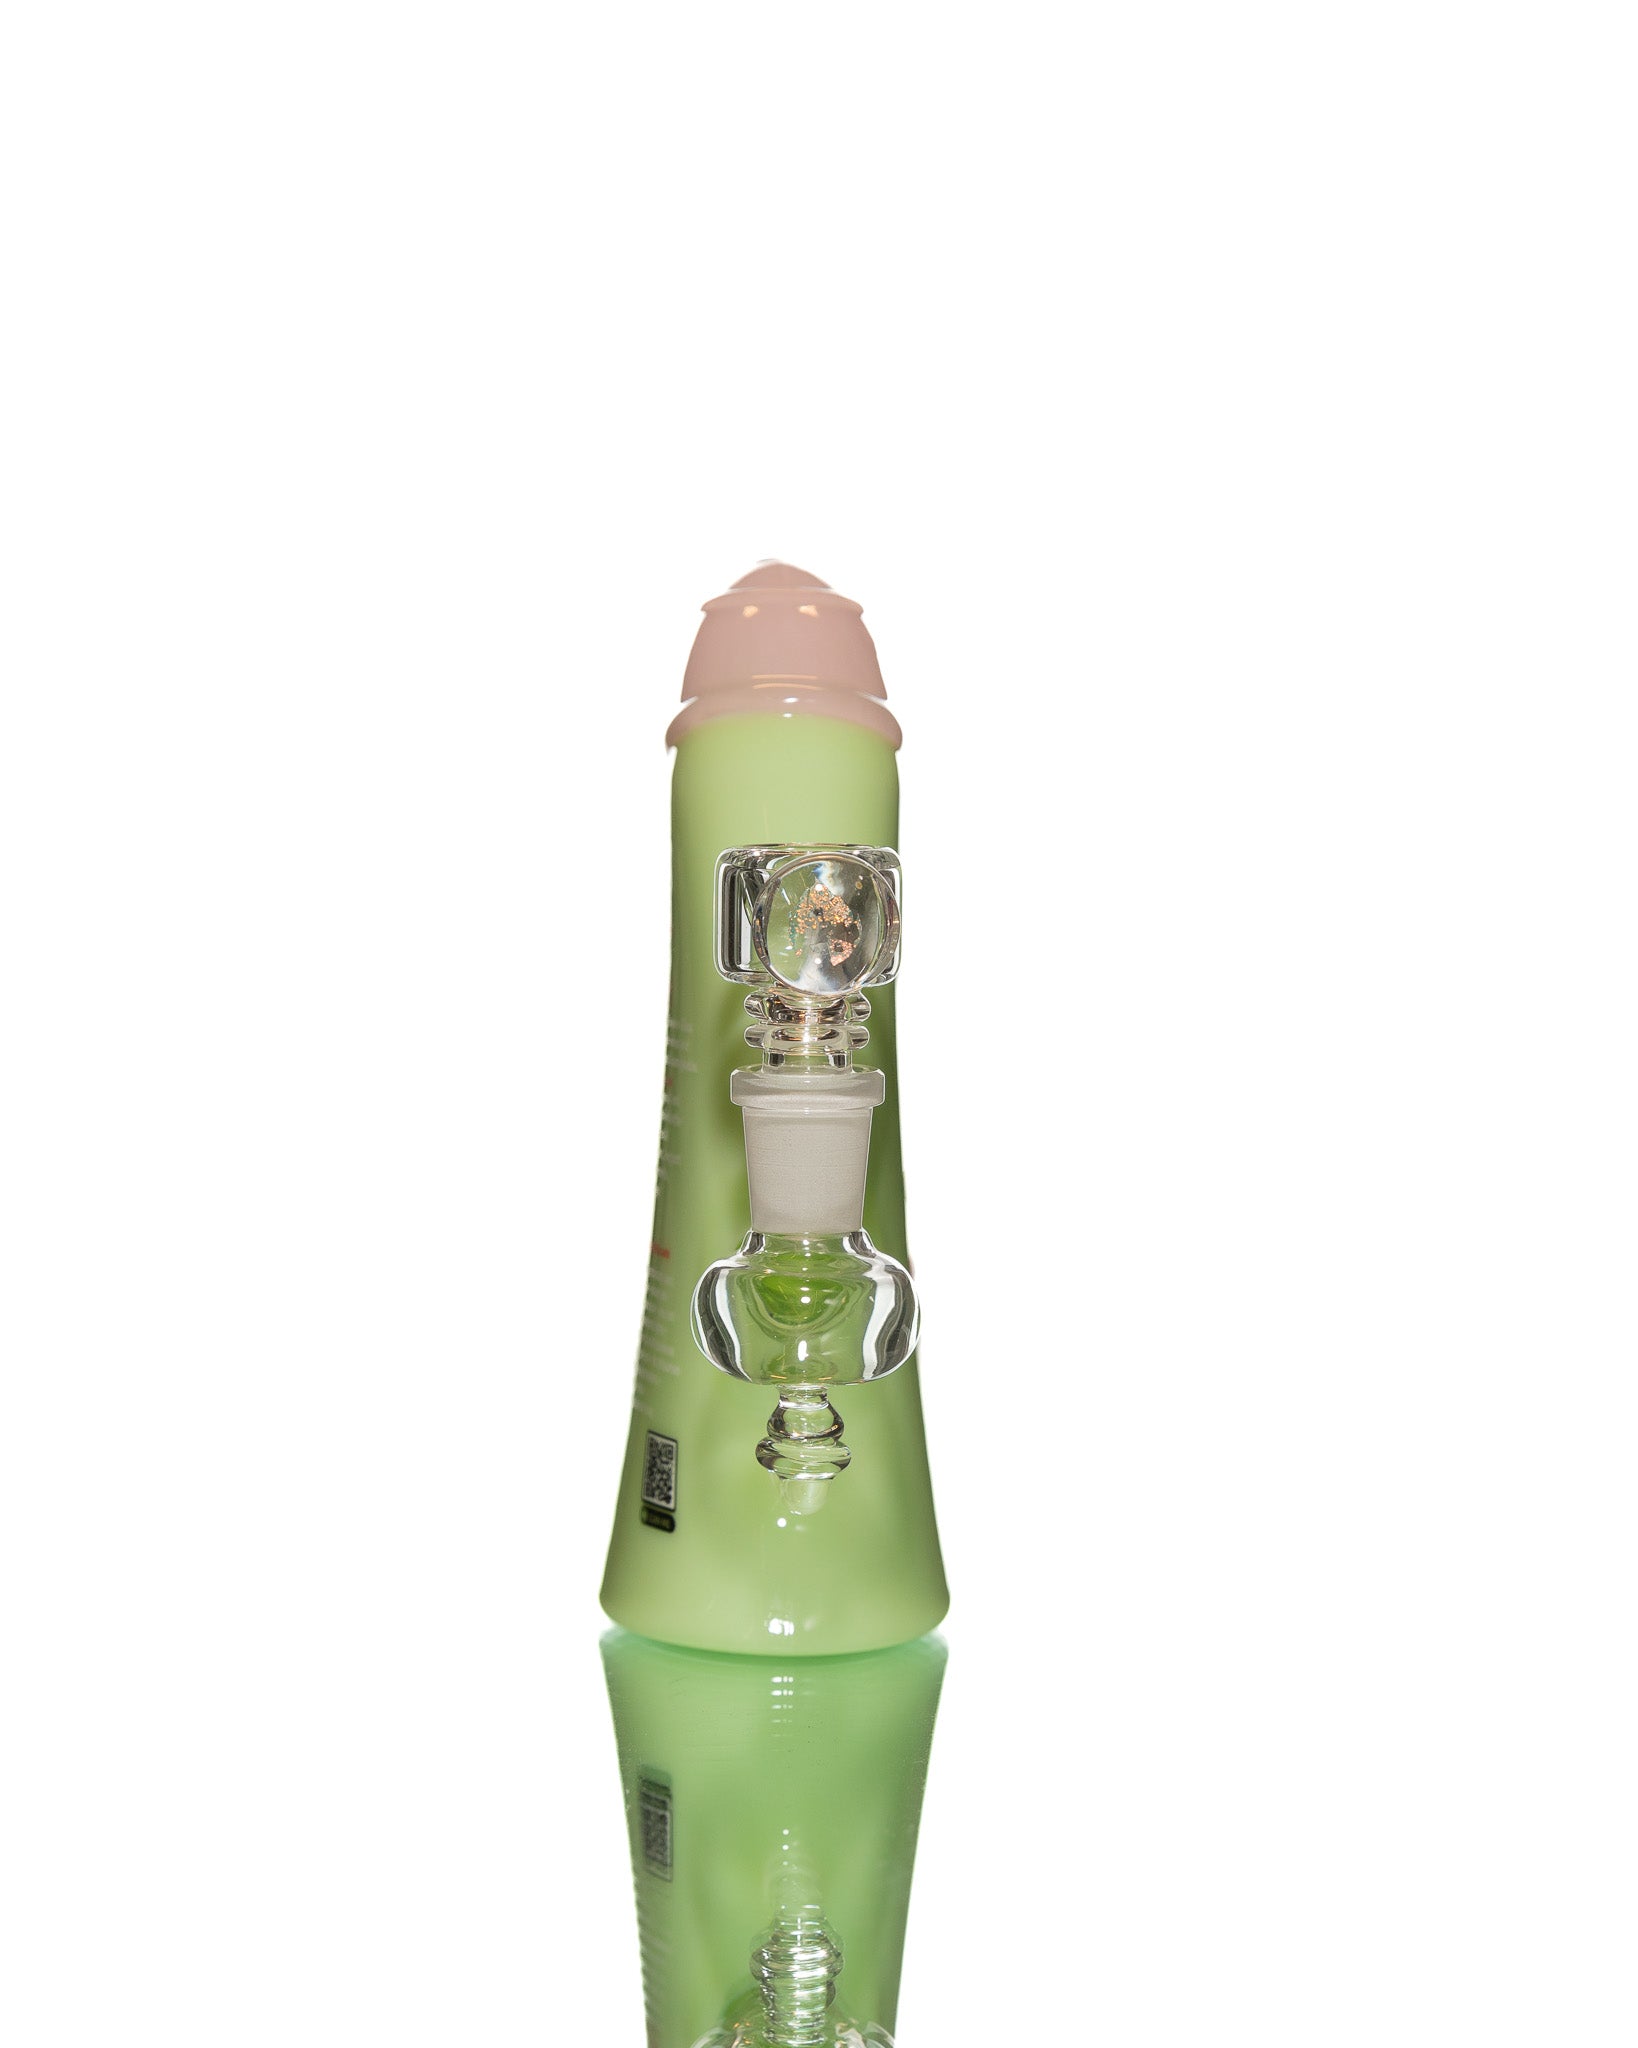 Empire Glassworks - Watermelon Kush Shampoo Bottle Mini Rig